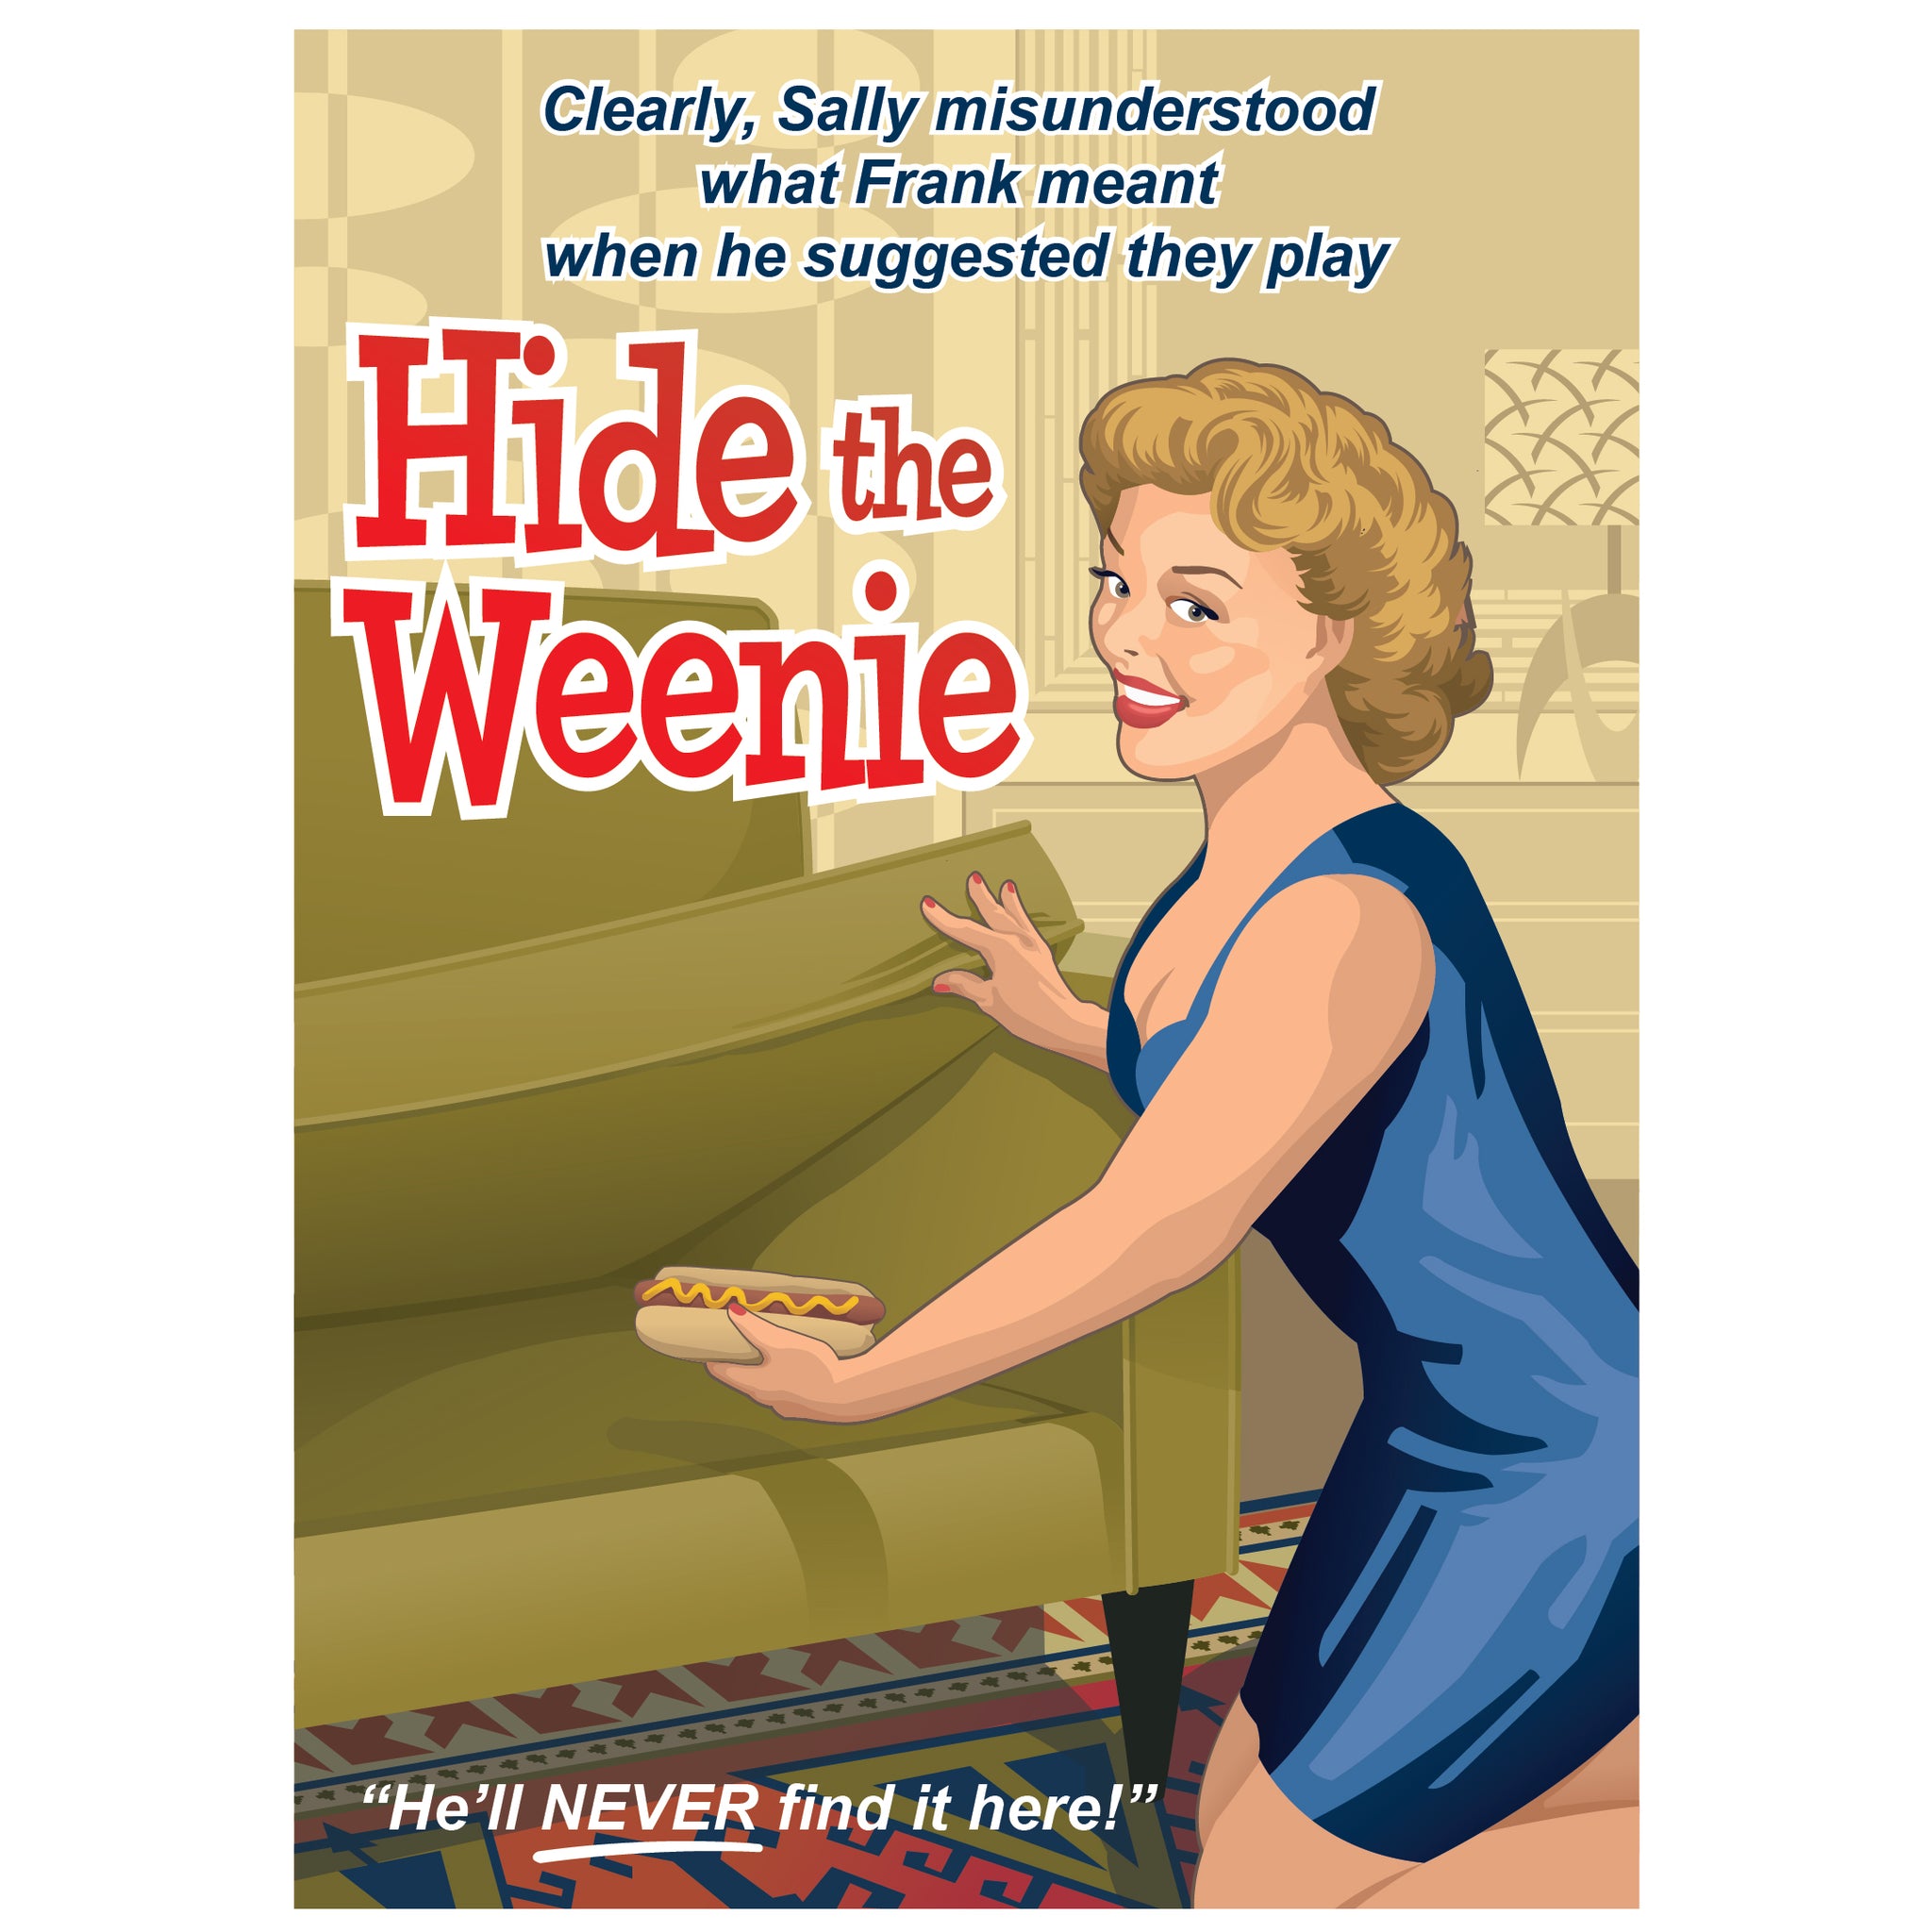 Hide the Weenie